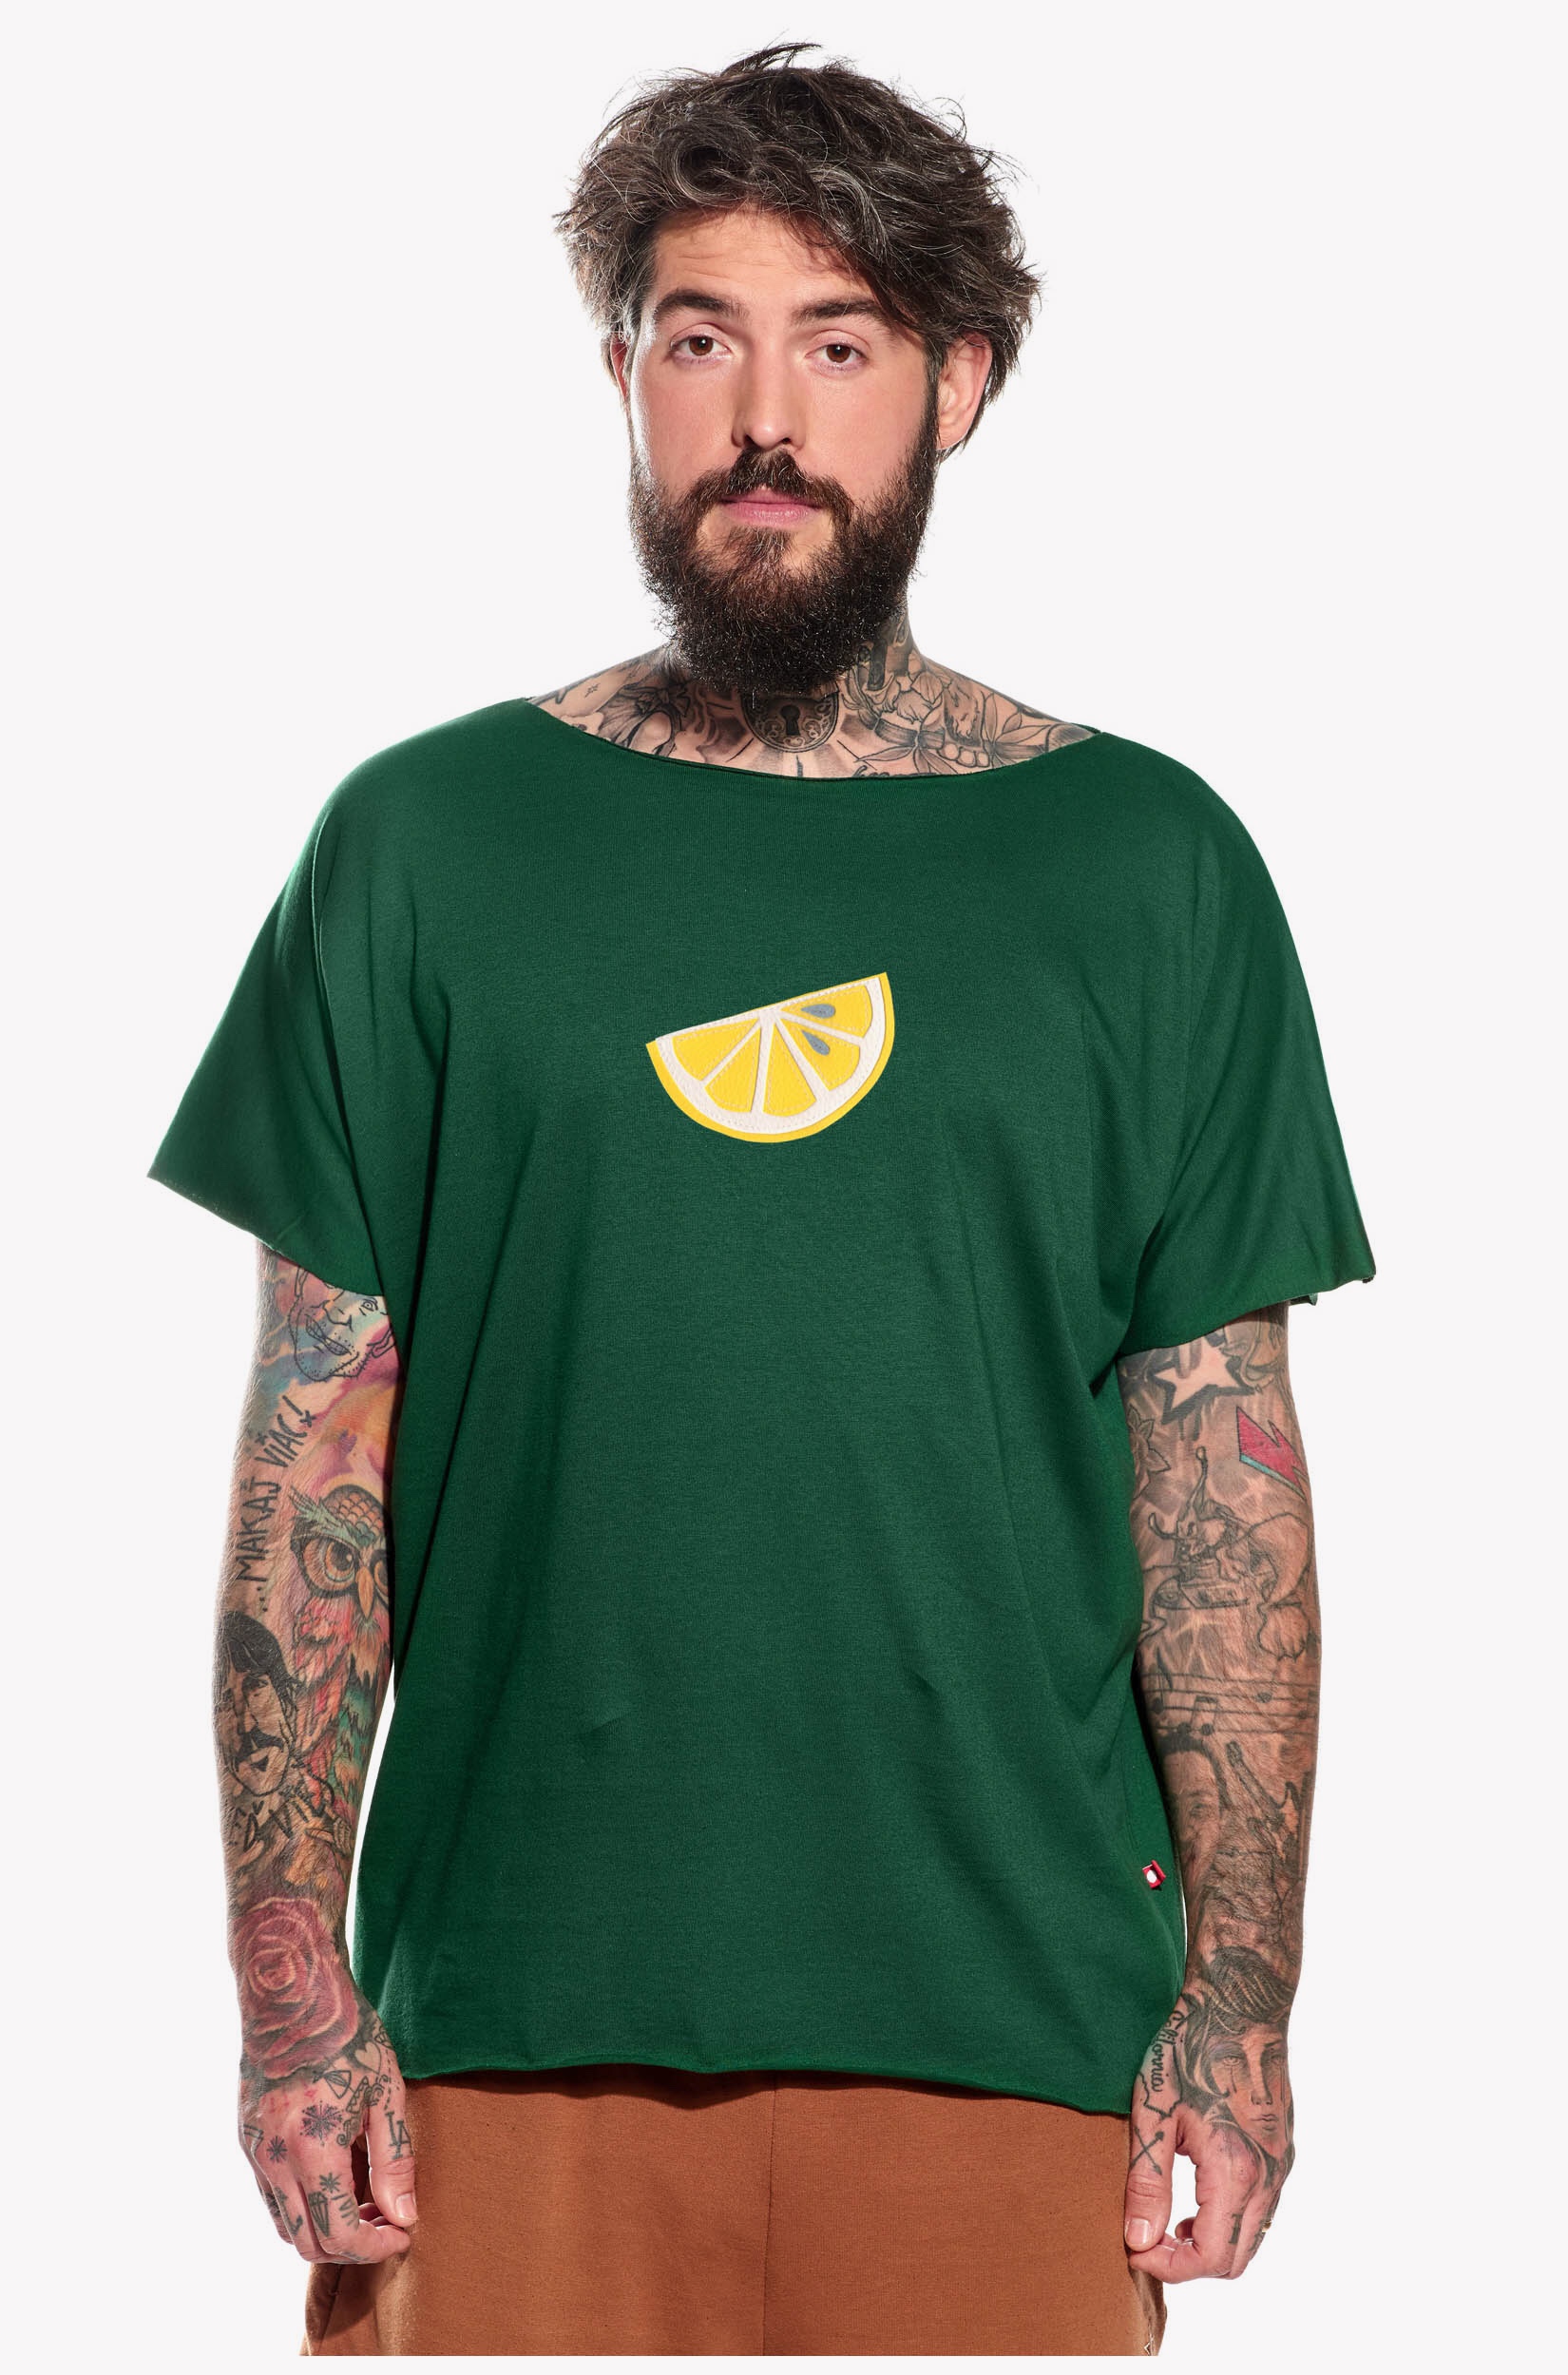 Shirt with lemon